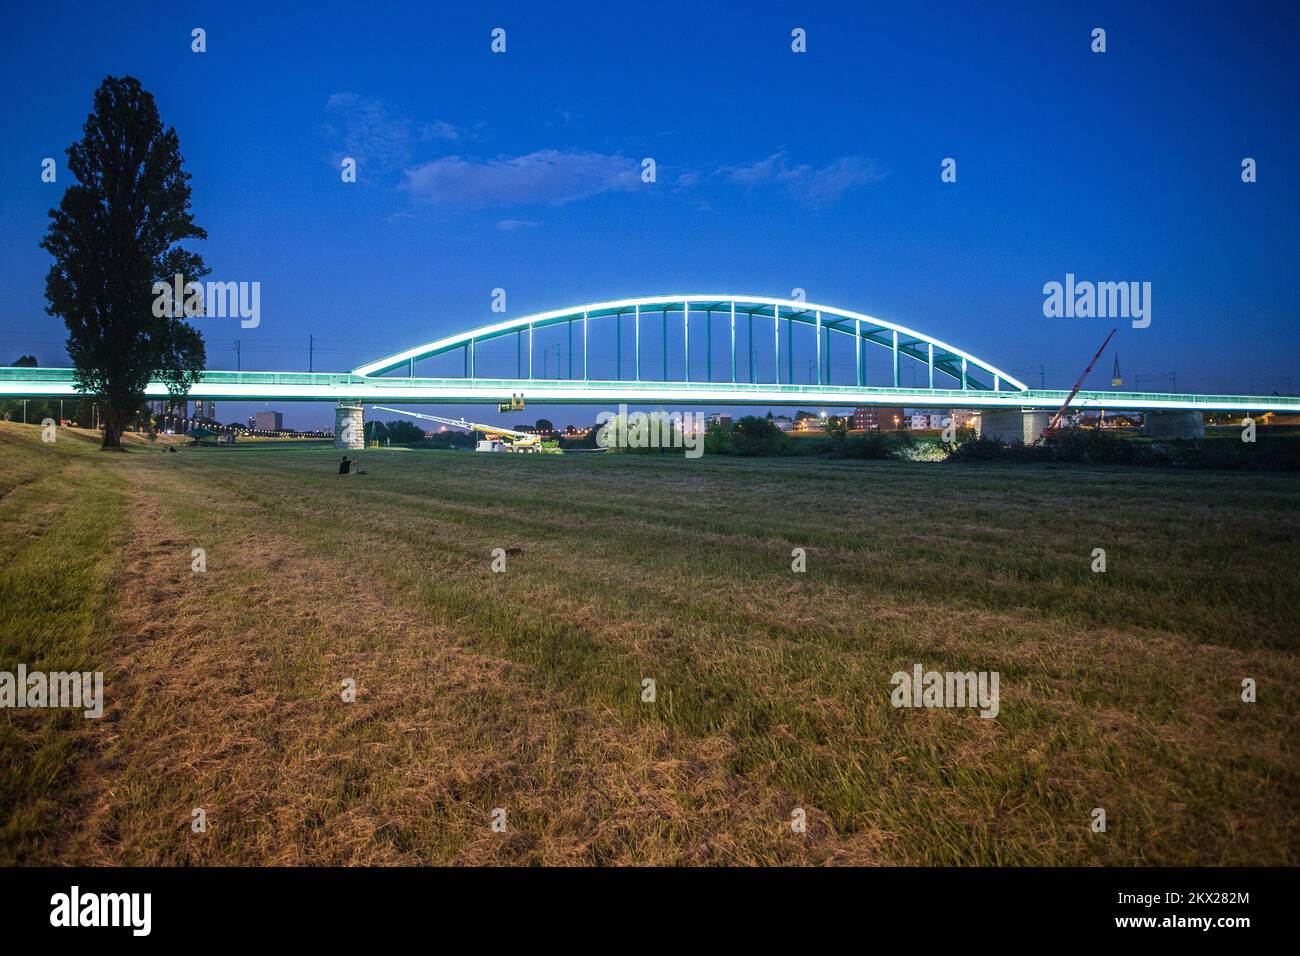 03.06.2017., Zagreb, Croatie - le pont ferroviaire vert sur la rivière Sava, grâce au graffiti avec le nom de Jimi Hendrix, a reçu un statut presque culte et est devenu l'un des symboles de la culture pop urbaine de Zagreb et il est appelé pont Hendrix. Il a été récemment décoré avec l'éclairage soulignant les contours de la partie inférieure du pont sur toute la longueur du faisceau principal (310m) et la structure supérieure du pont avec lumière statique, neutre blanc, tandis que l'éclairage de couleur dynamique s'active en passant le train avec le premier wagon derrière la locomotive . Photo: Davor Pukla Banque D'Images